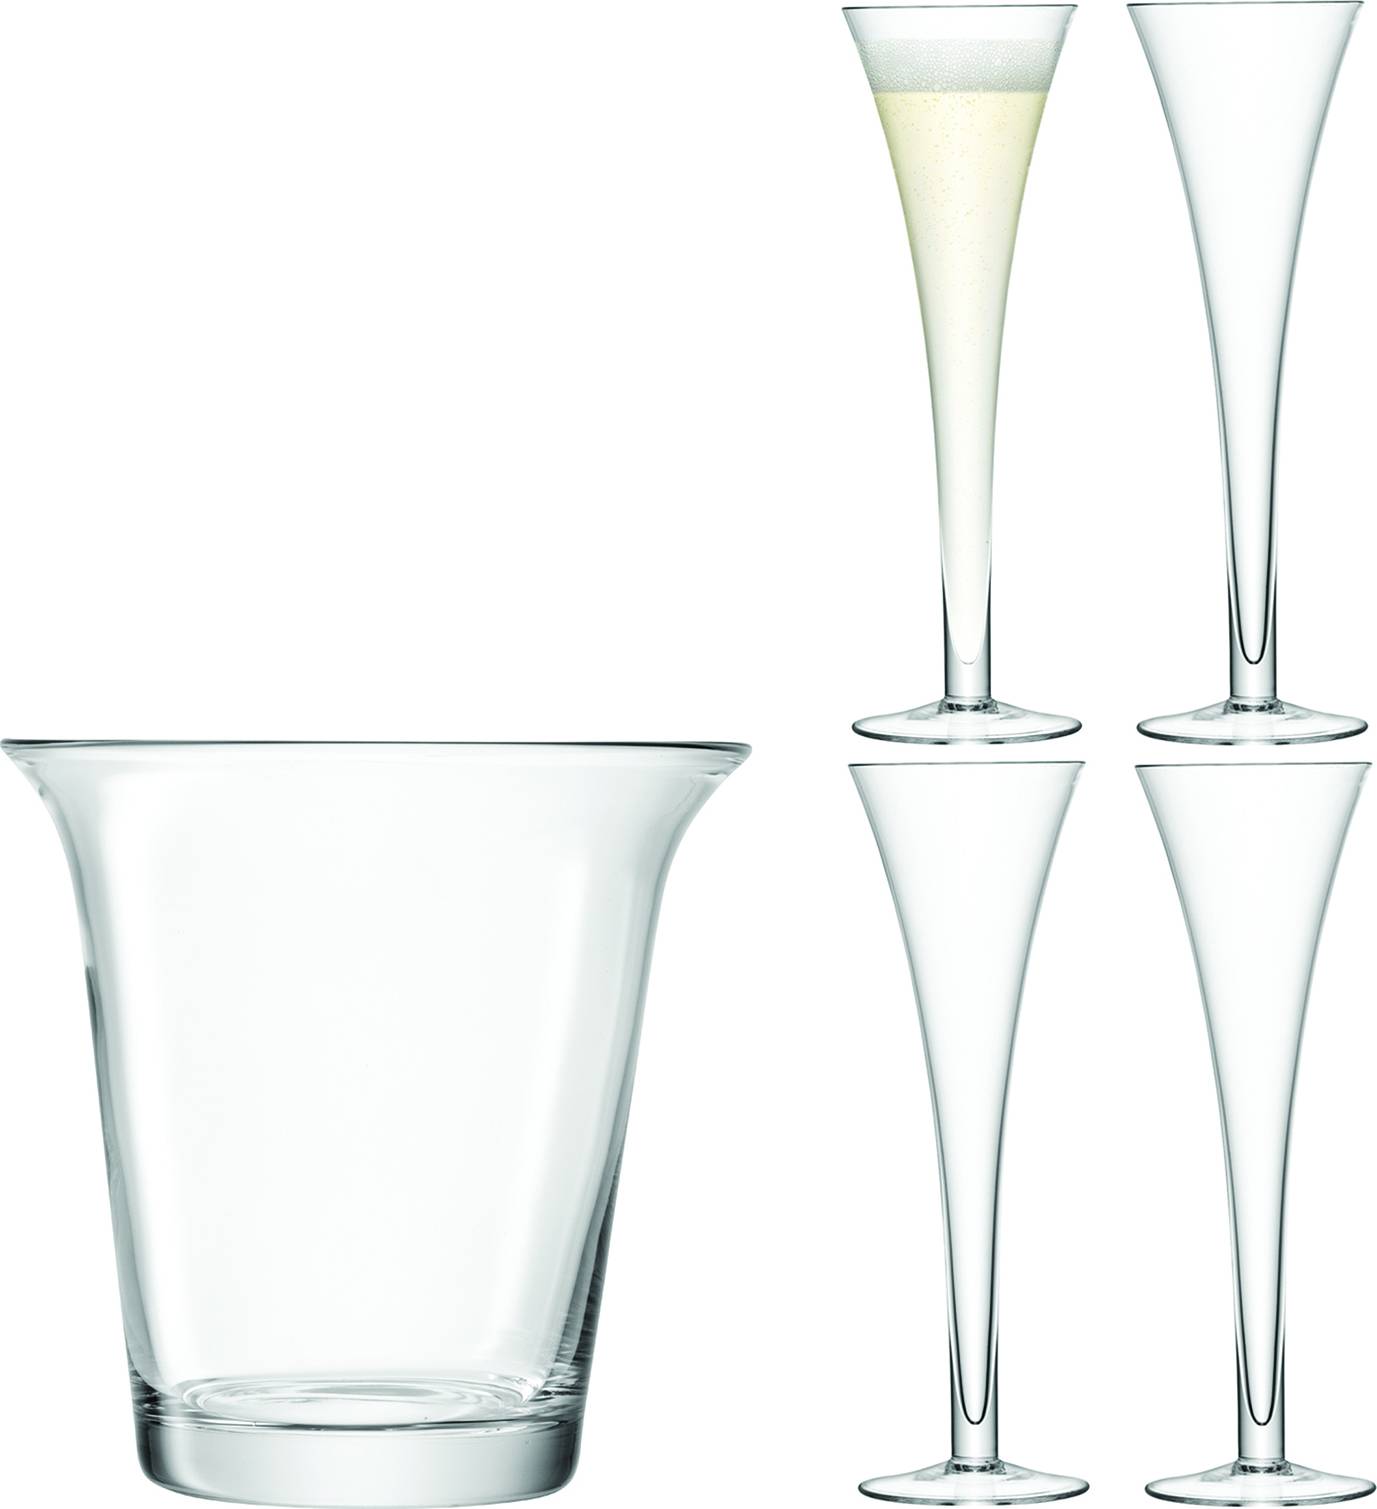 LSA dárkový set Champagne, 4ks sklenic +chladicí kbelík, čirý G1033-00-301